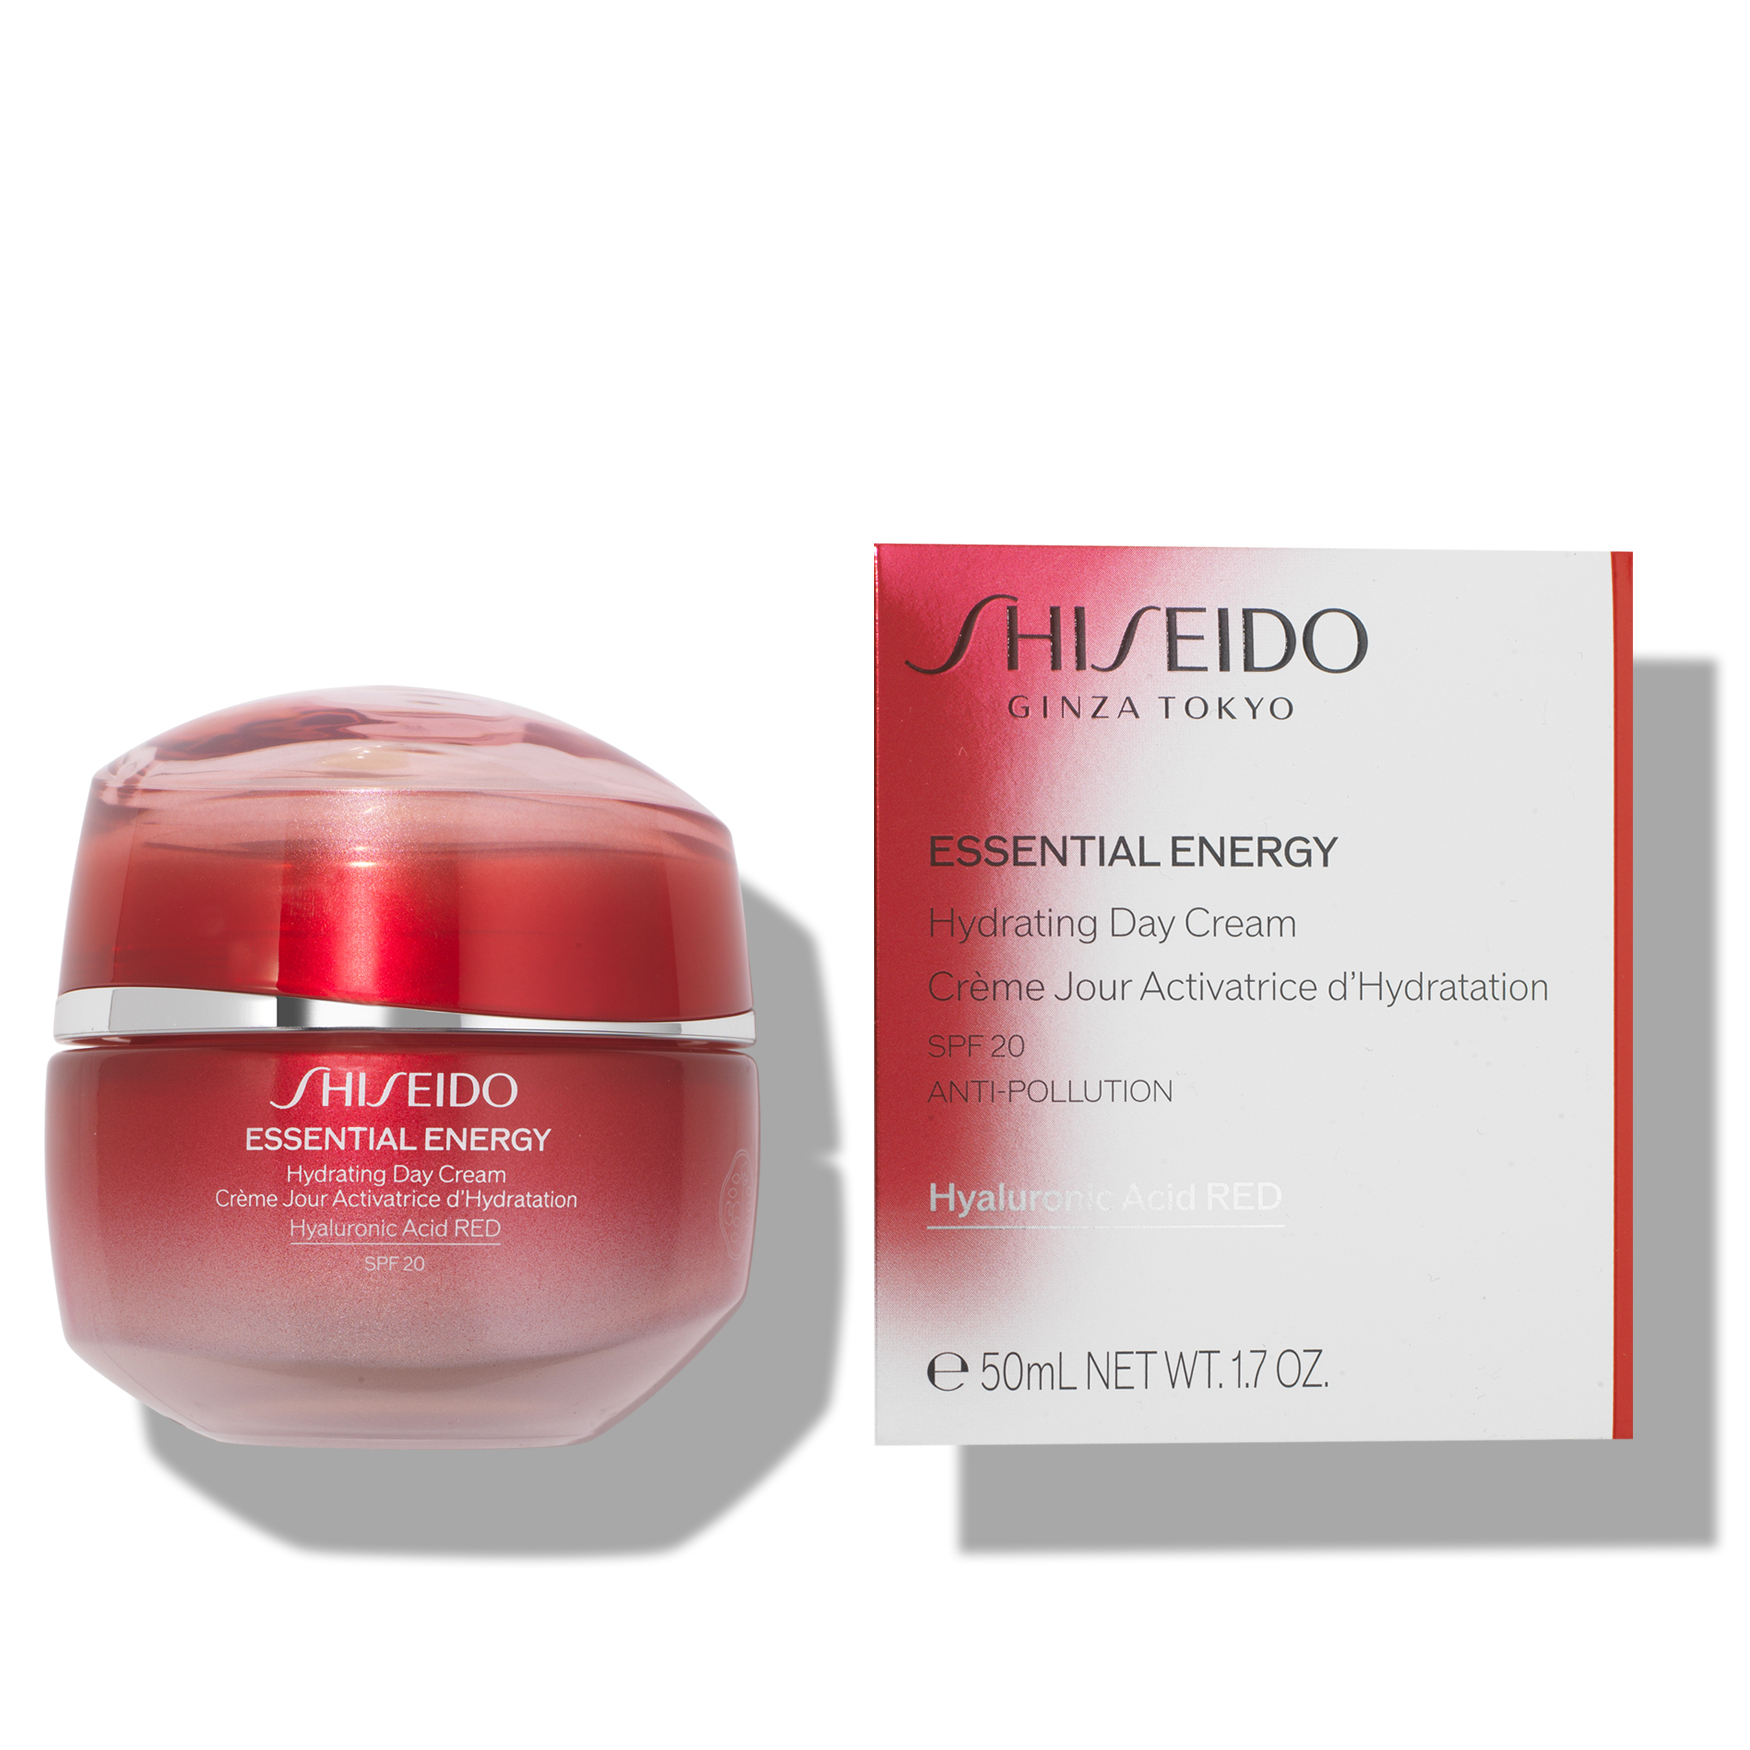 Shiseido essential. Шисейдо Essential Energy Hydrating Cream. Shiseido Essential Energy. Крем Shiseido суперувлаж. Shiseido Advanced Essential Energy логотип.